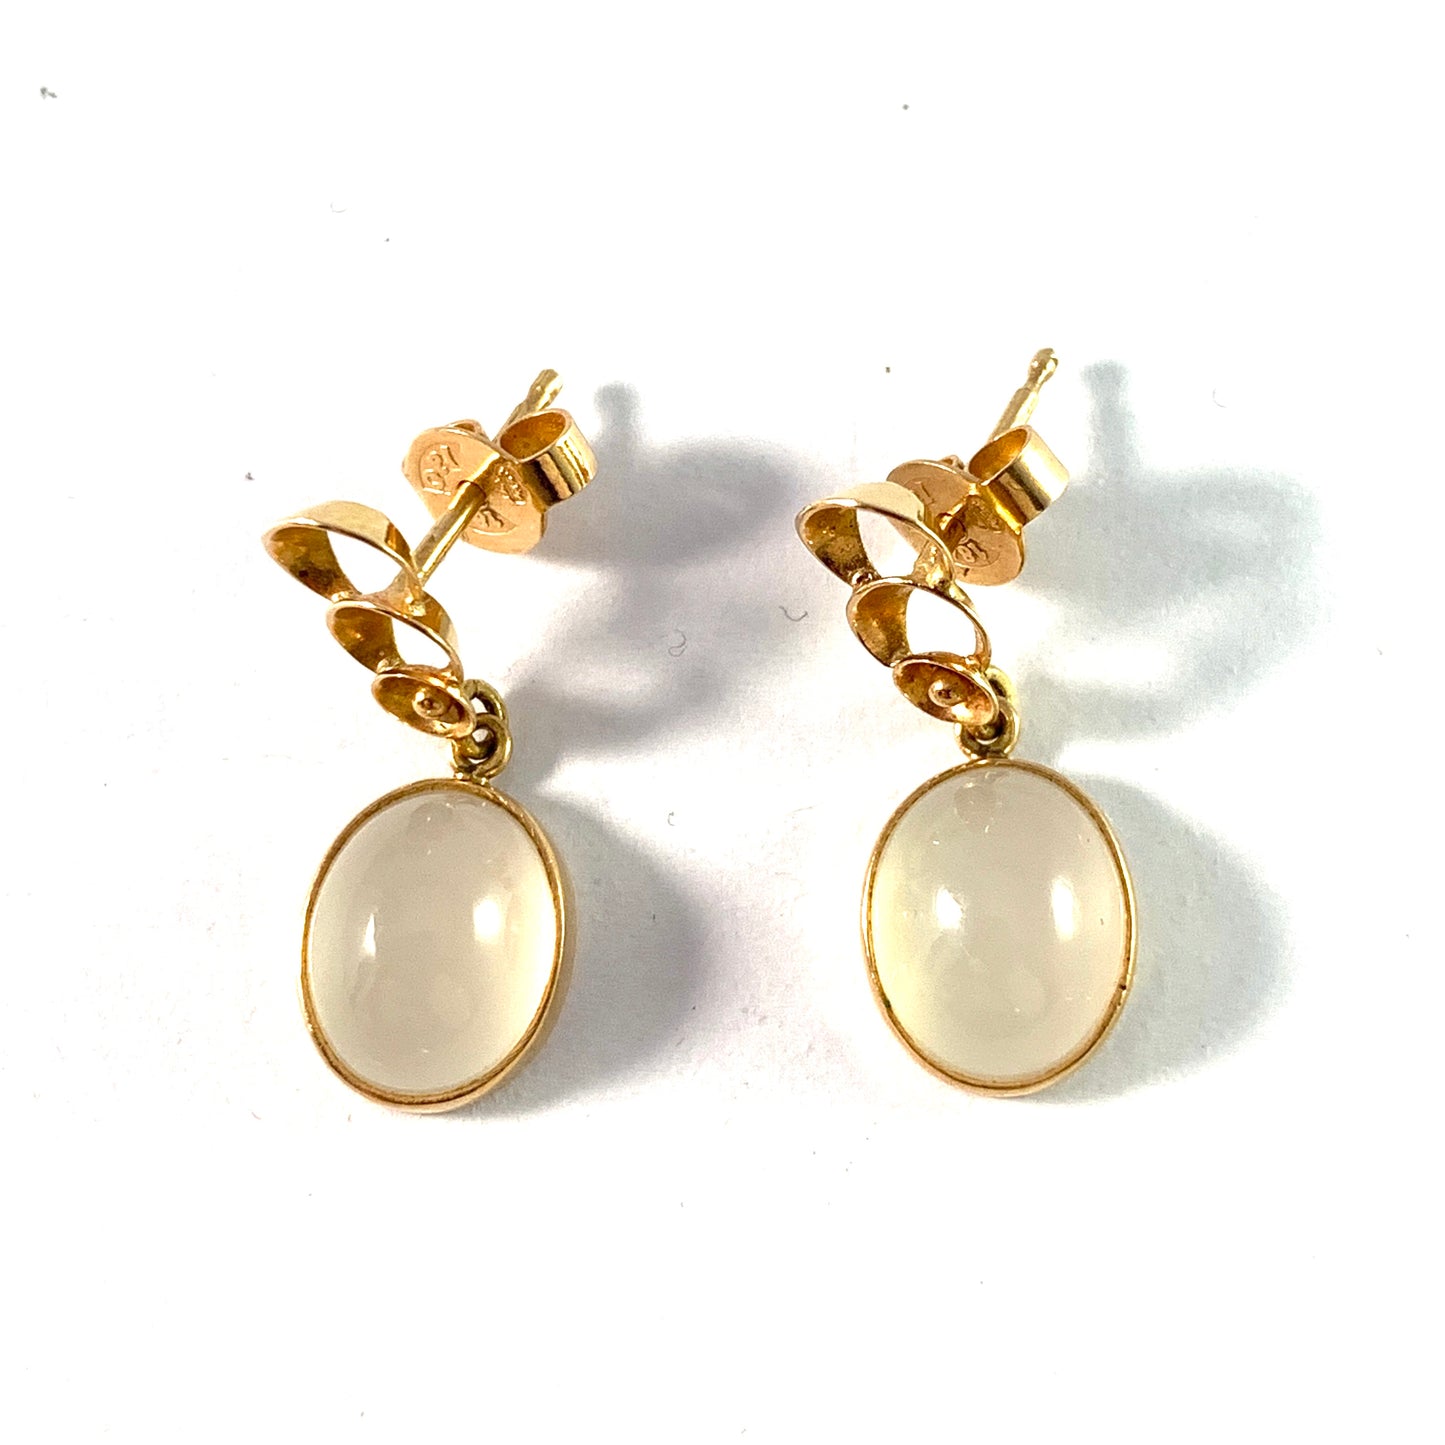 Opifors, Sweden 1960-70s. Vintage 18k Gold White Chalcedony  Earrings.